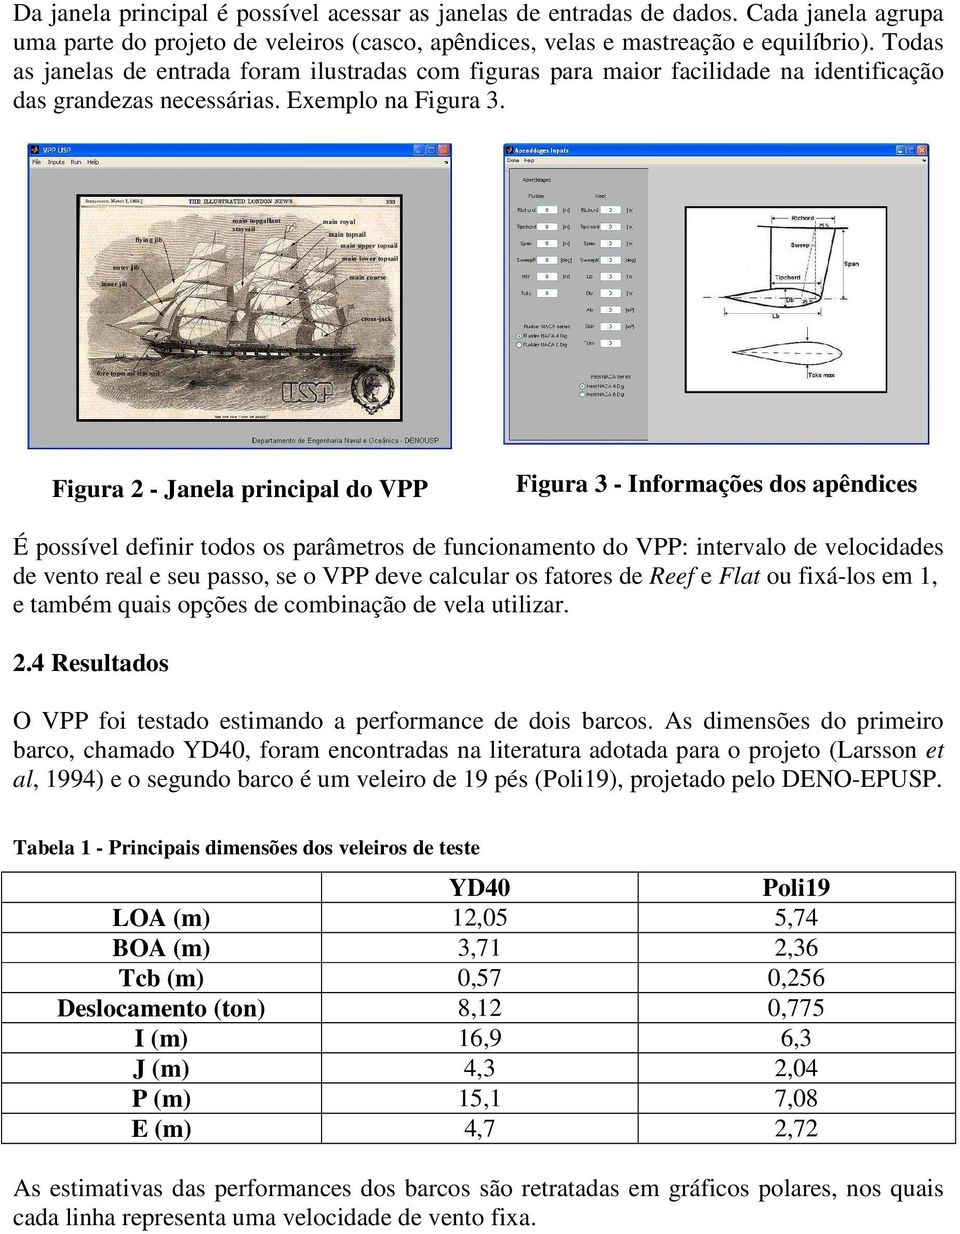 Figura 2 - Janela principal do VPP Figura 3 - Informações dos apêndices É possível definir todos os parâmetros de funcionamento do VPP: intervalo de velocidades de vento real e seu passo, se o VPP